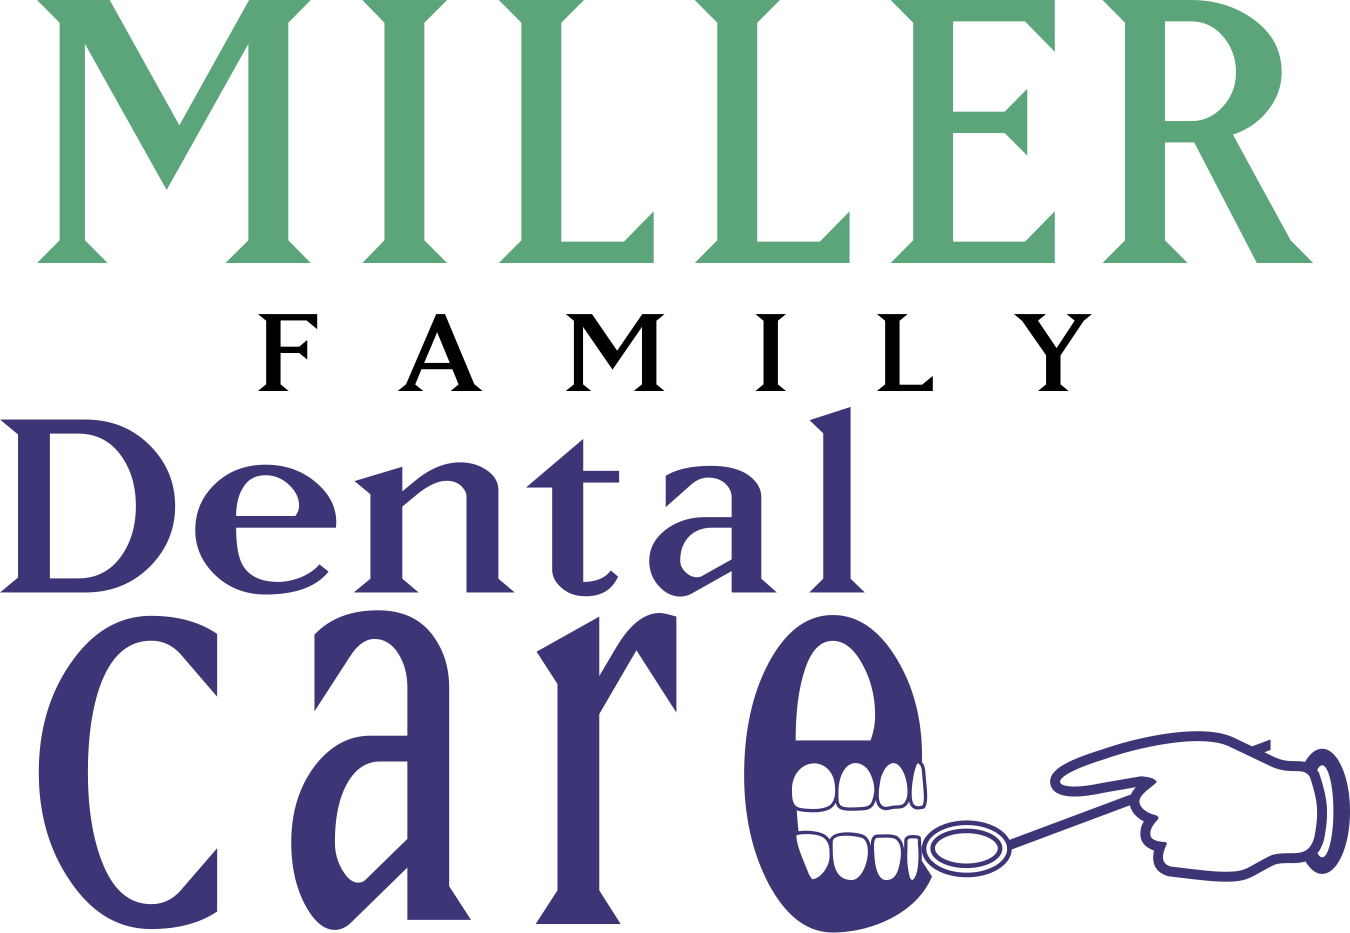 Miller Family Dental Care